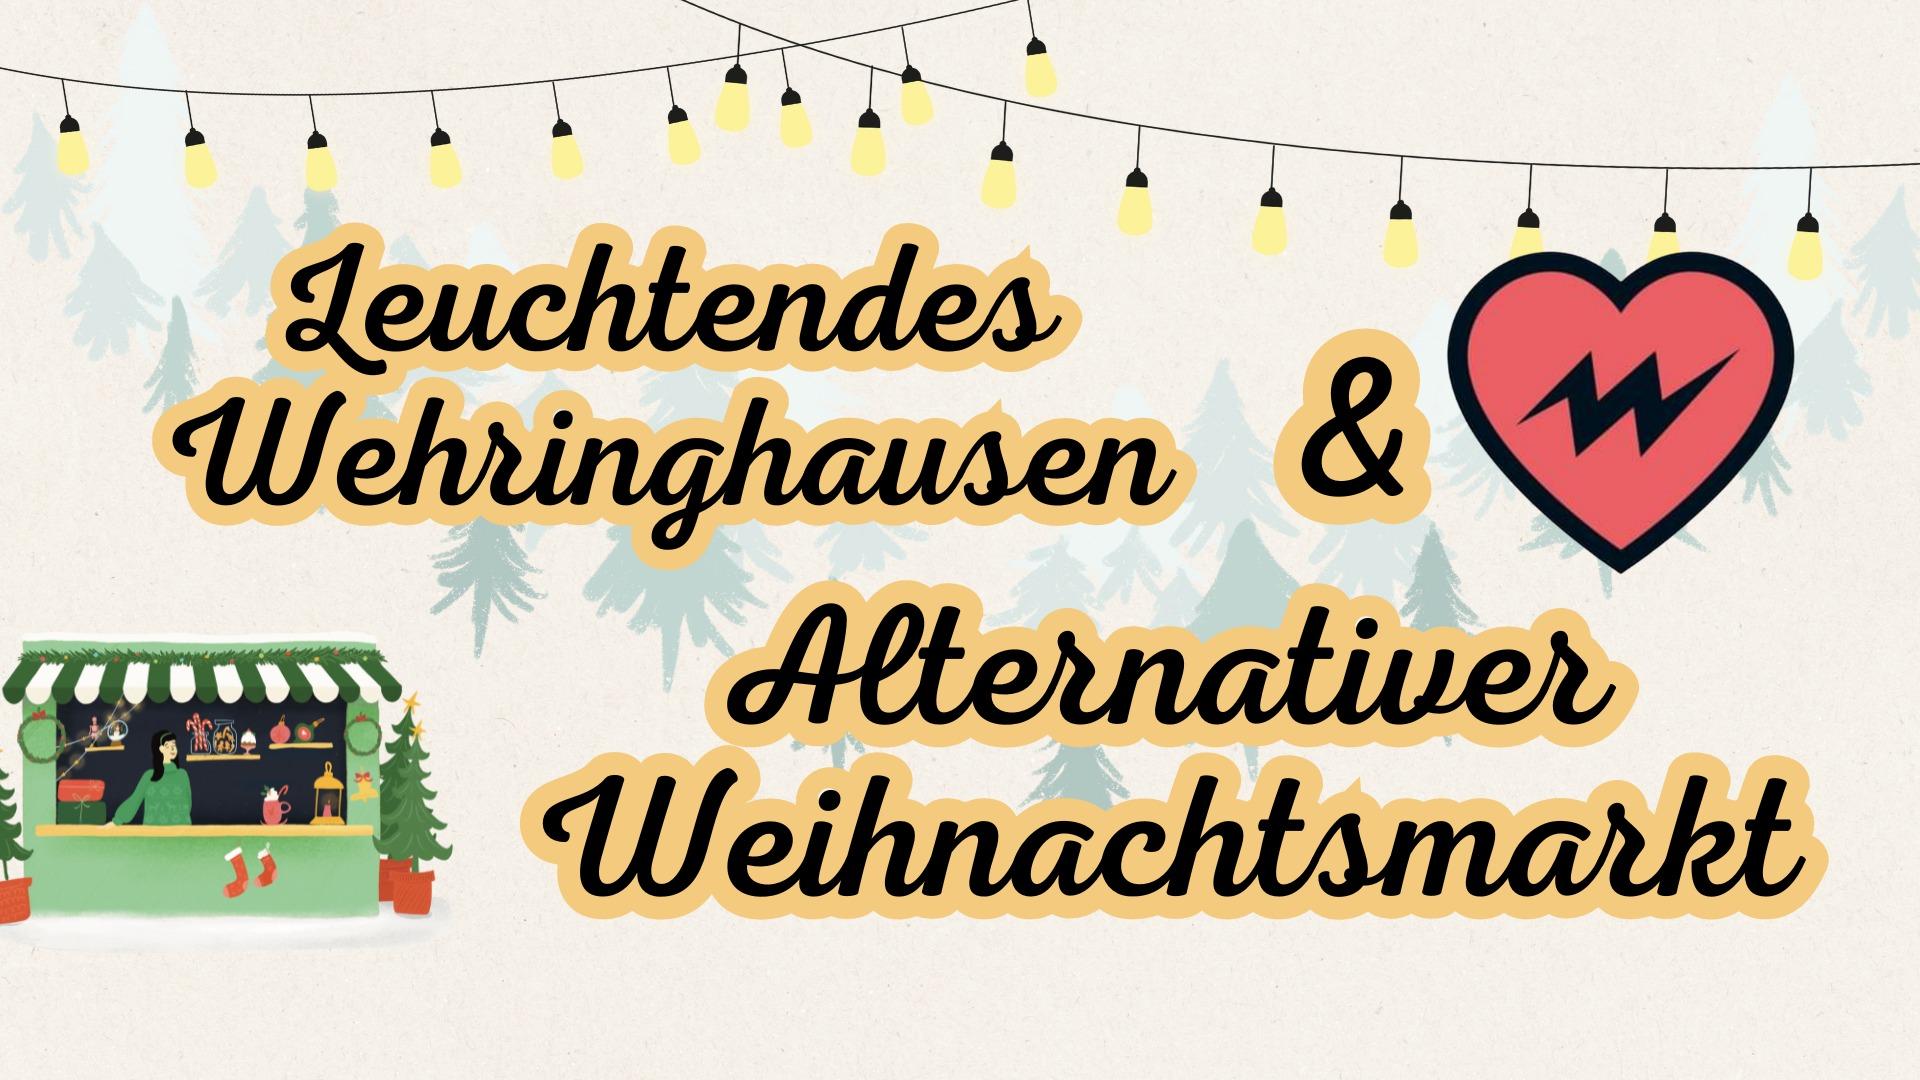 Alternativer Weihnachtsmark und Leuchtendes Wehringhausen